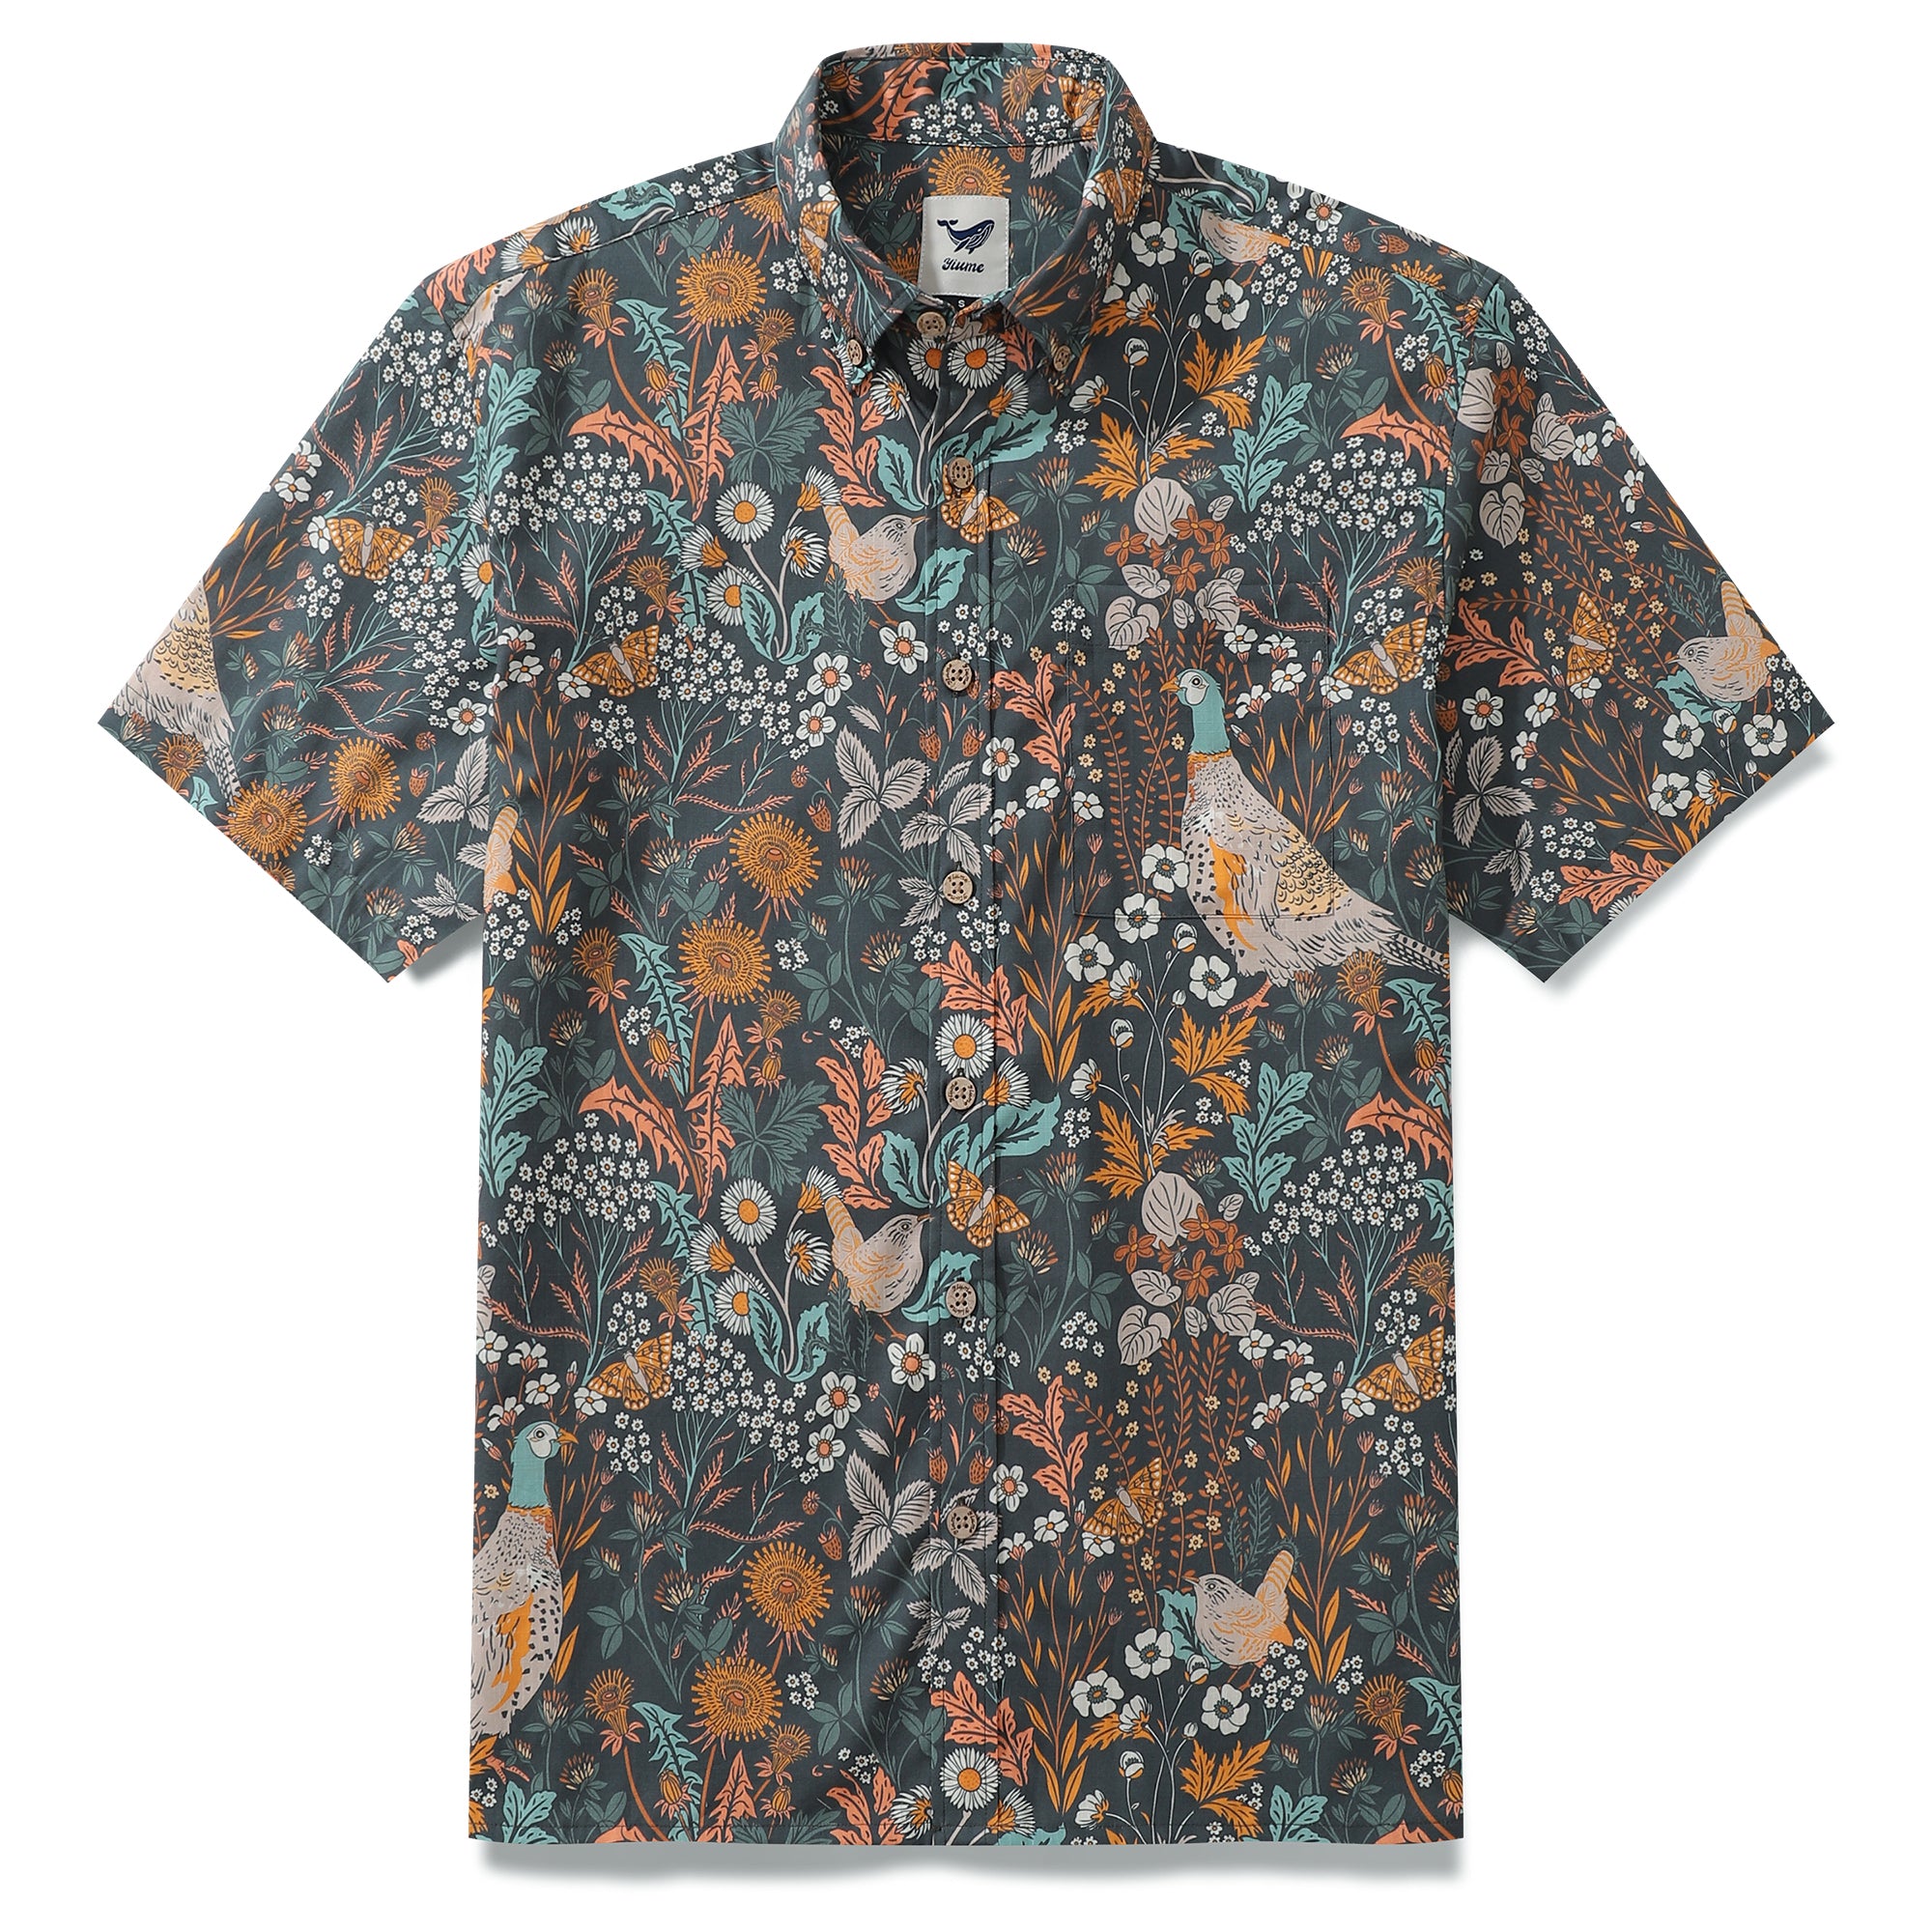 Hawaiian Shirt For Men Birds Shirt Button-down Shirt Short Sleeve 100% Cotton Shirt